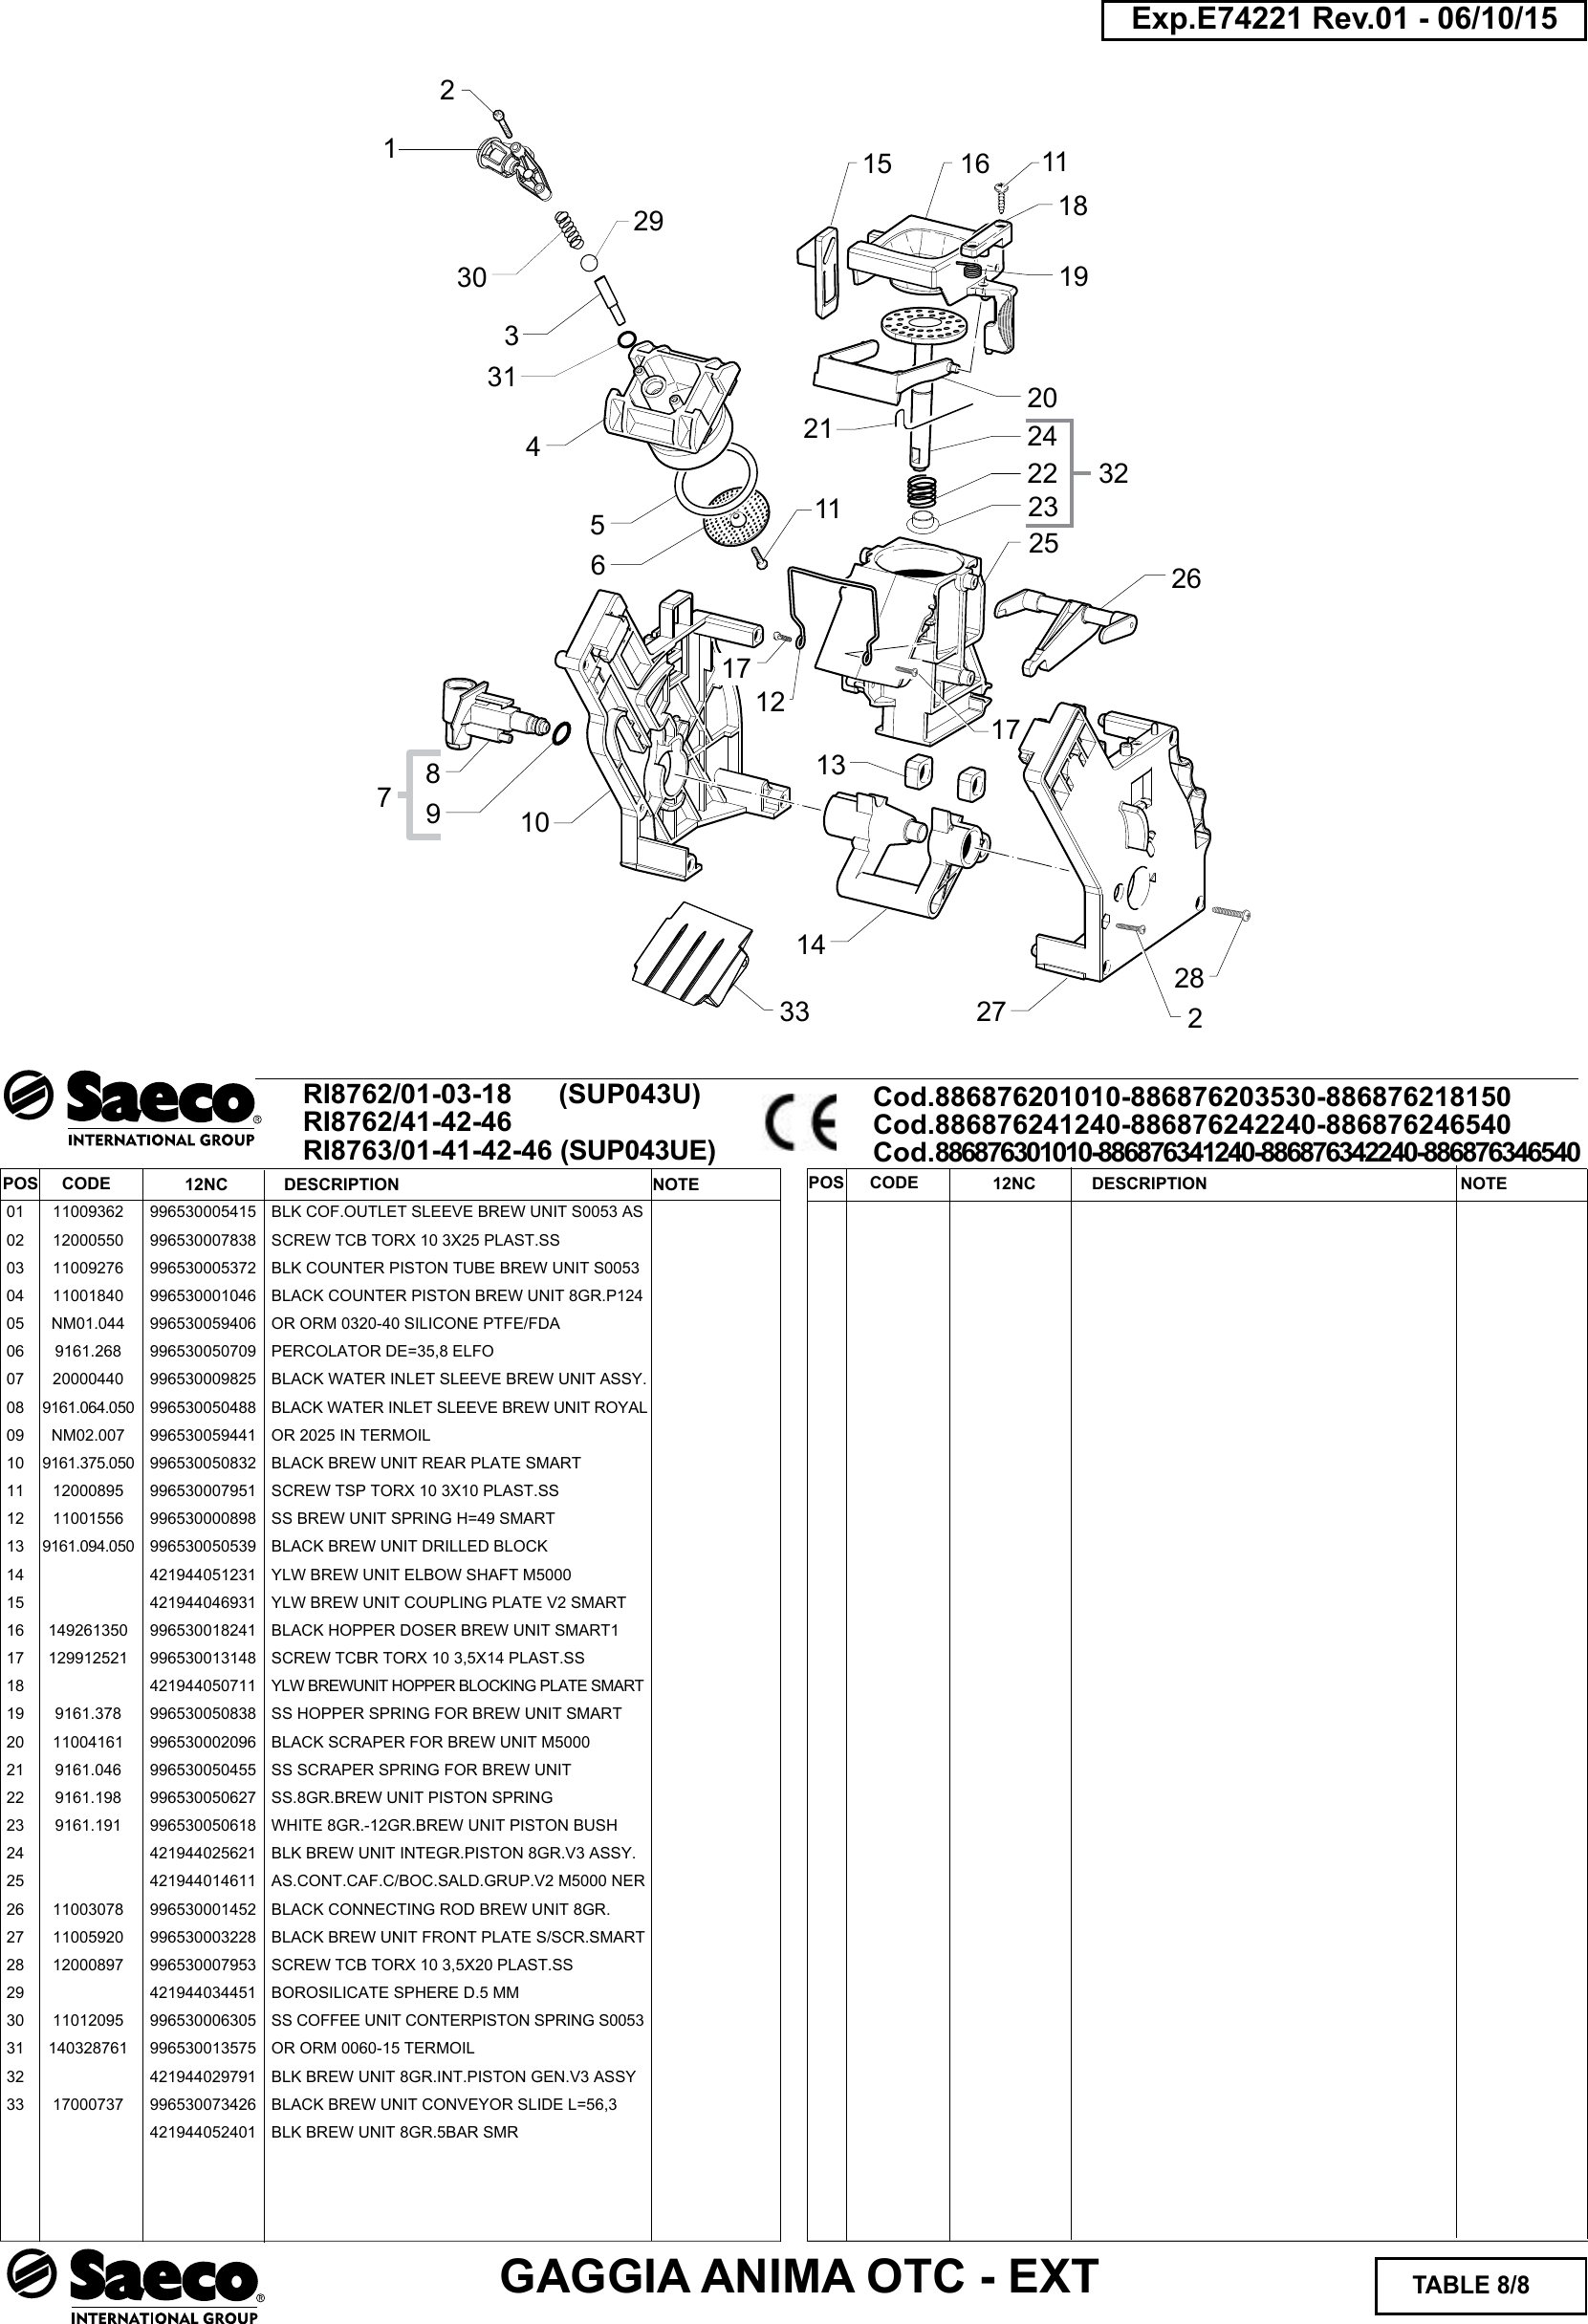 Page 8 of 8 - Gaggia Anima Prestige Parts Diagram User Manual